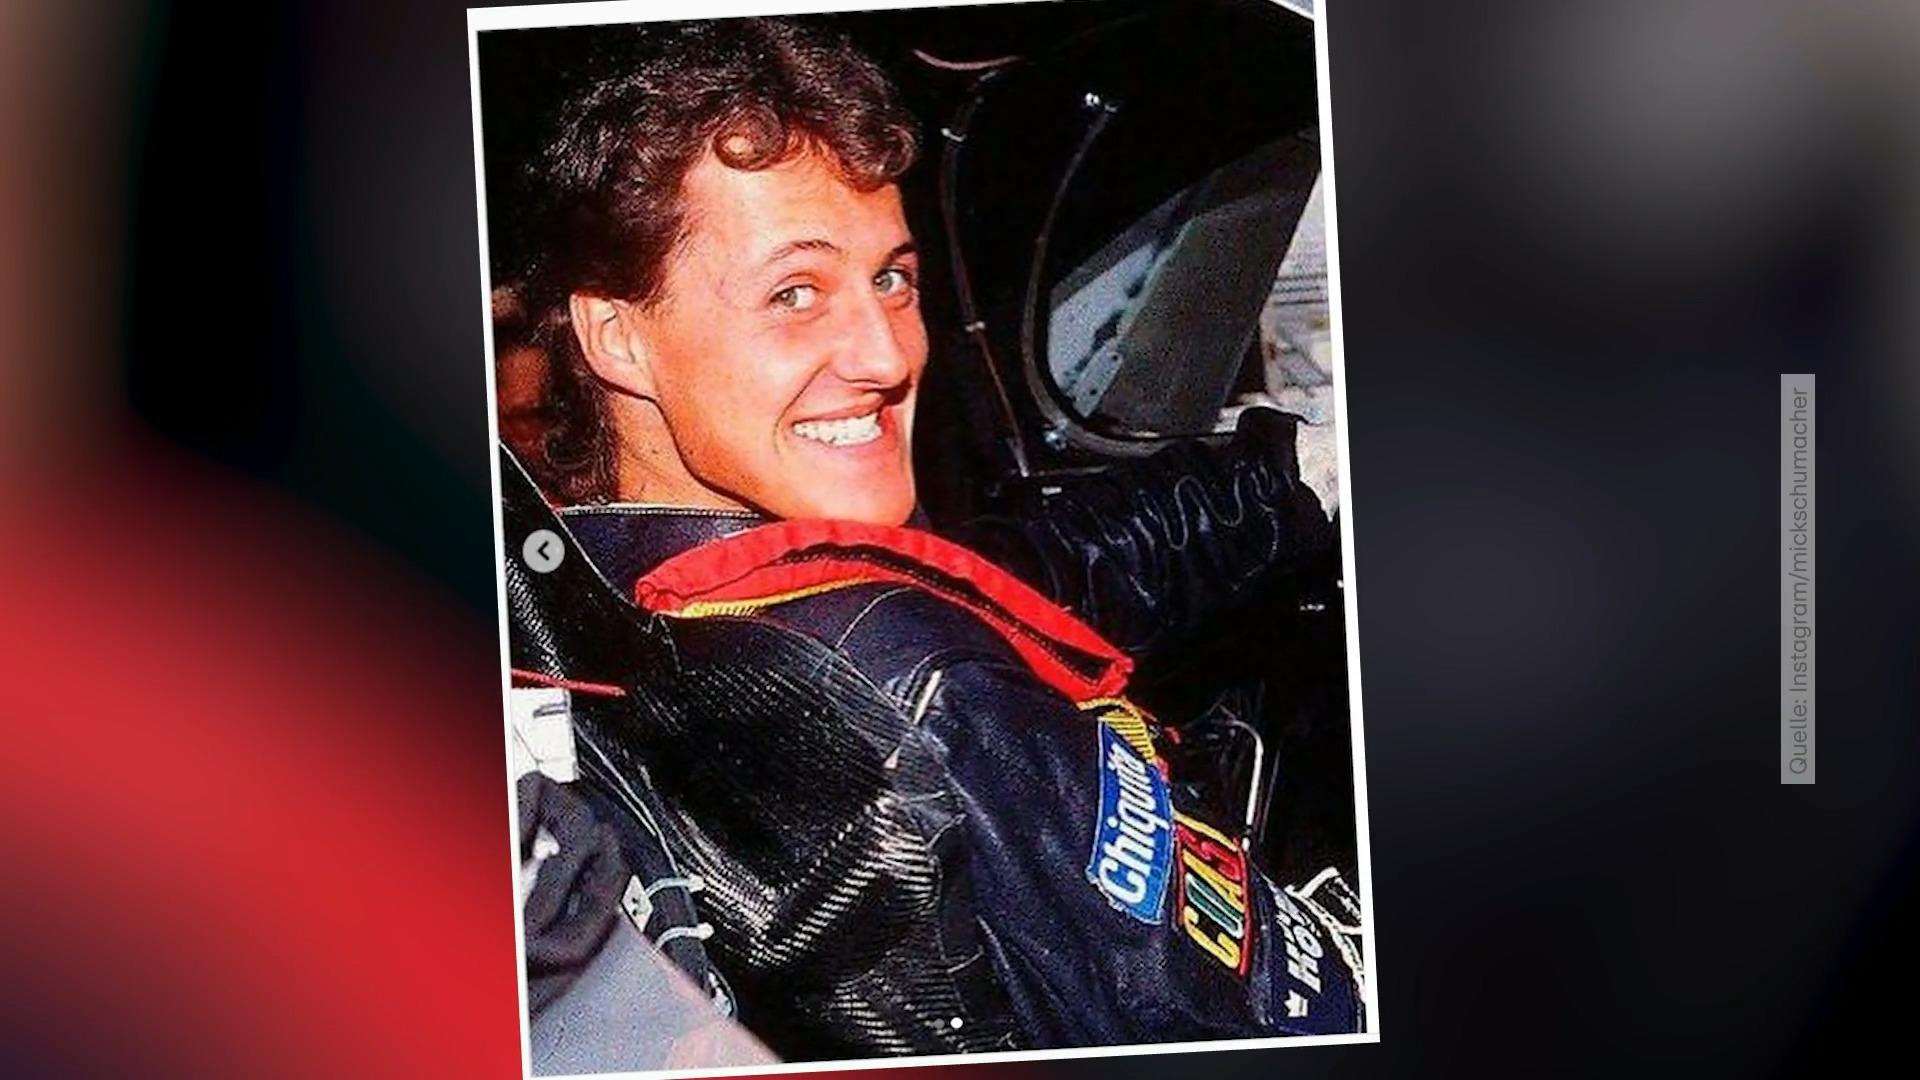 Mick und Gina gratulieren Papa Michael Schumacher zum 54. Schöne Fotos von Sohn & Tochter